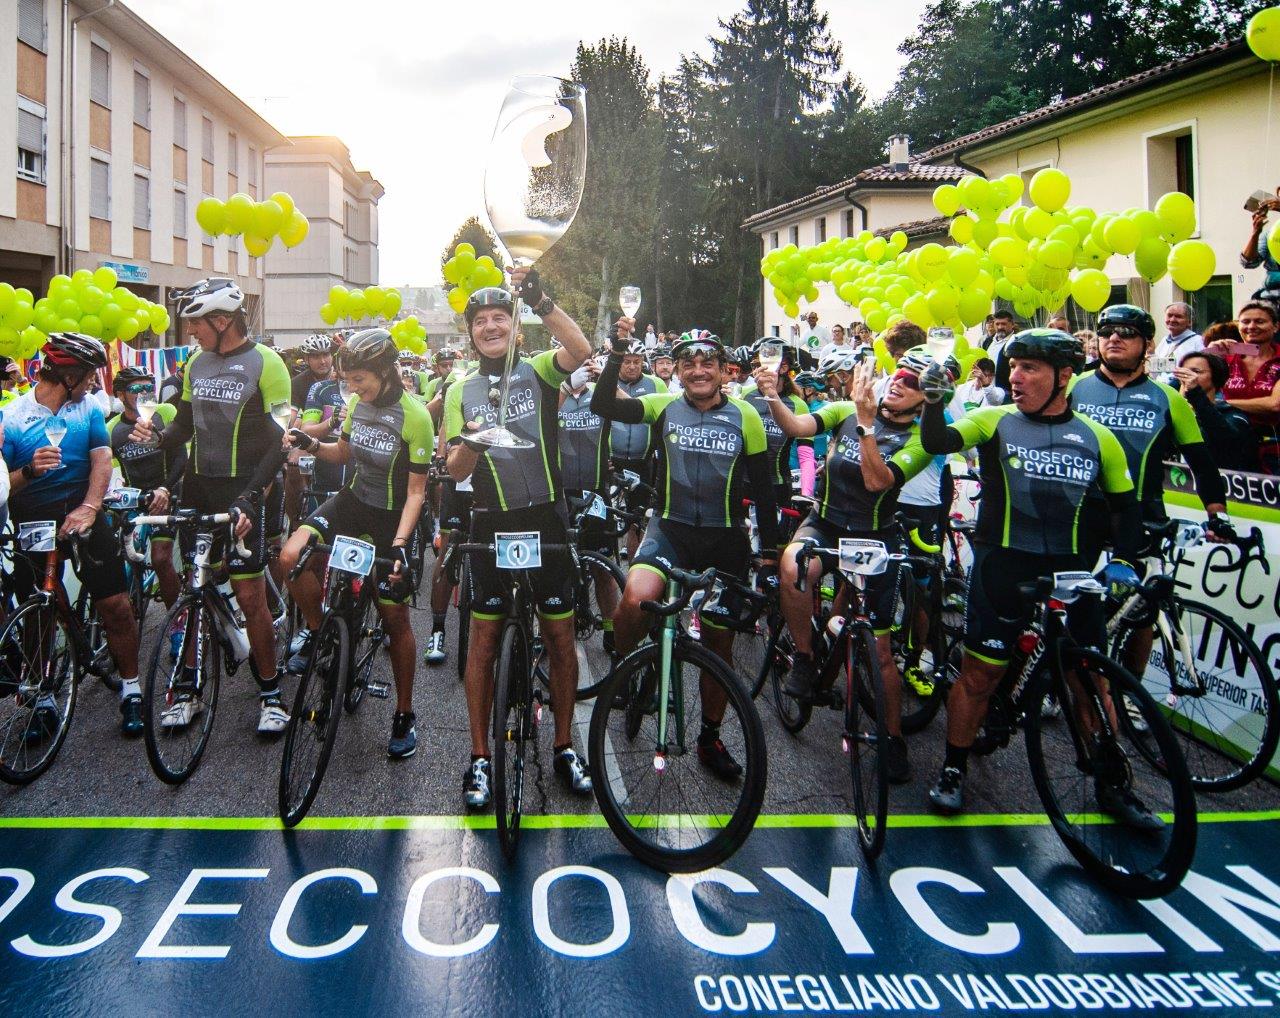 Prosecco Cycling e Basso Bike insieme per una nuova avventura sui pedali